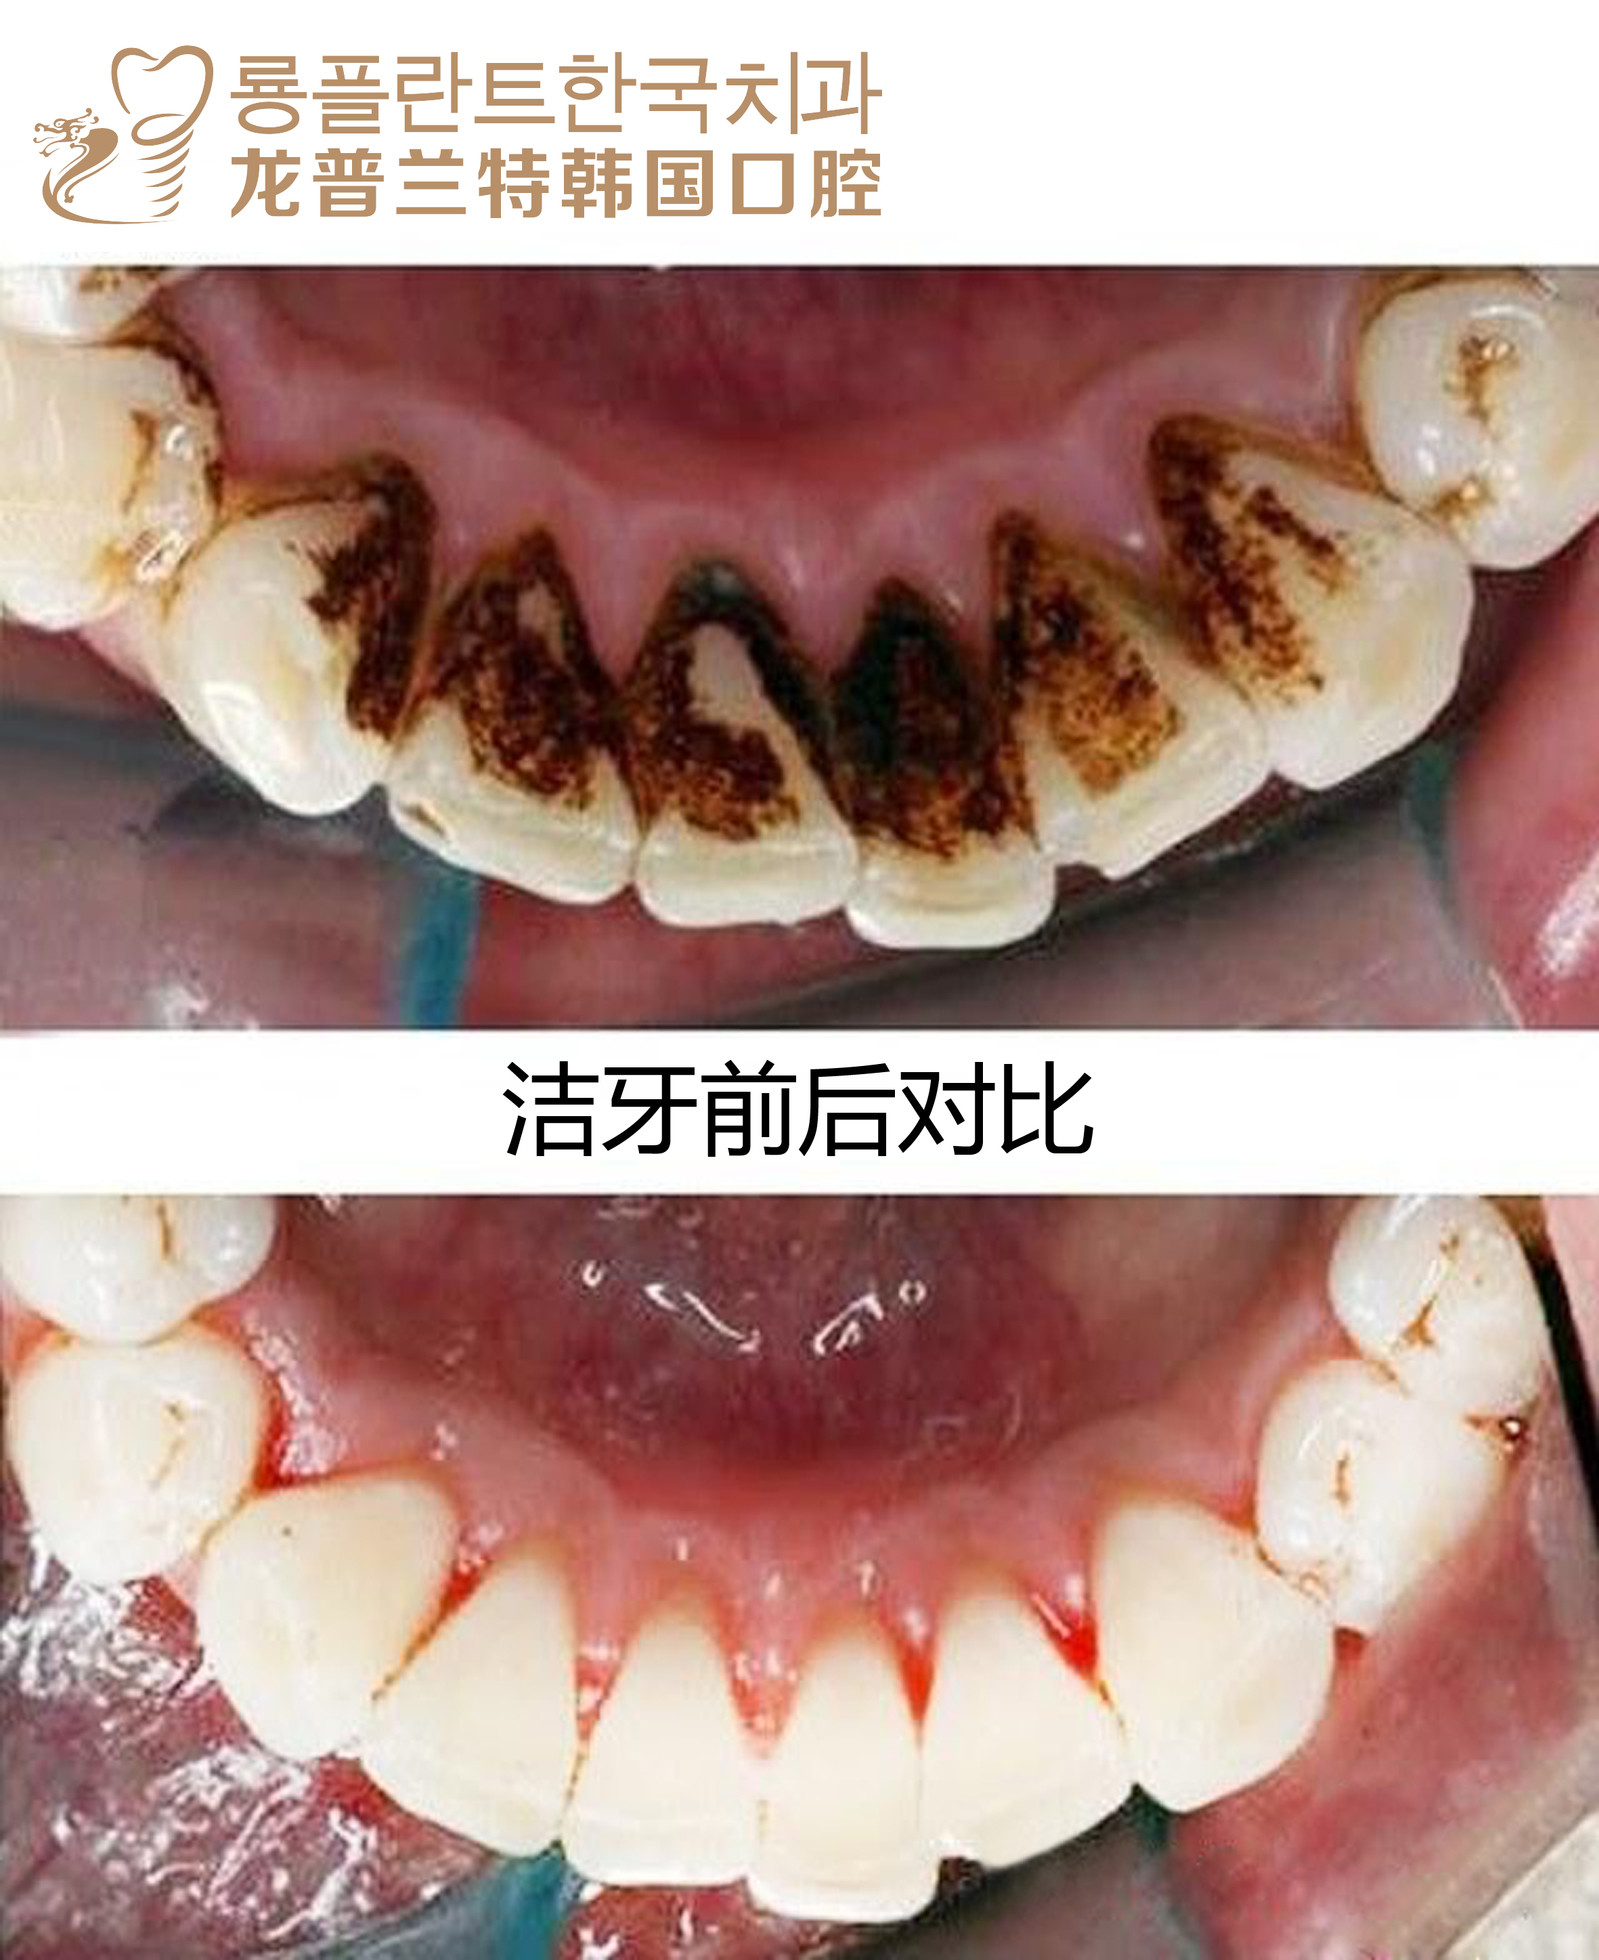 【洗牙】单人超声波洁牙套餐 洁牙 抛光 口腔检查